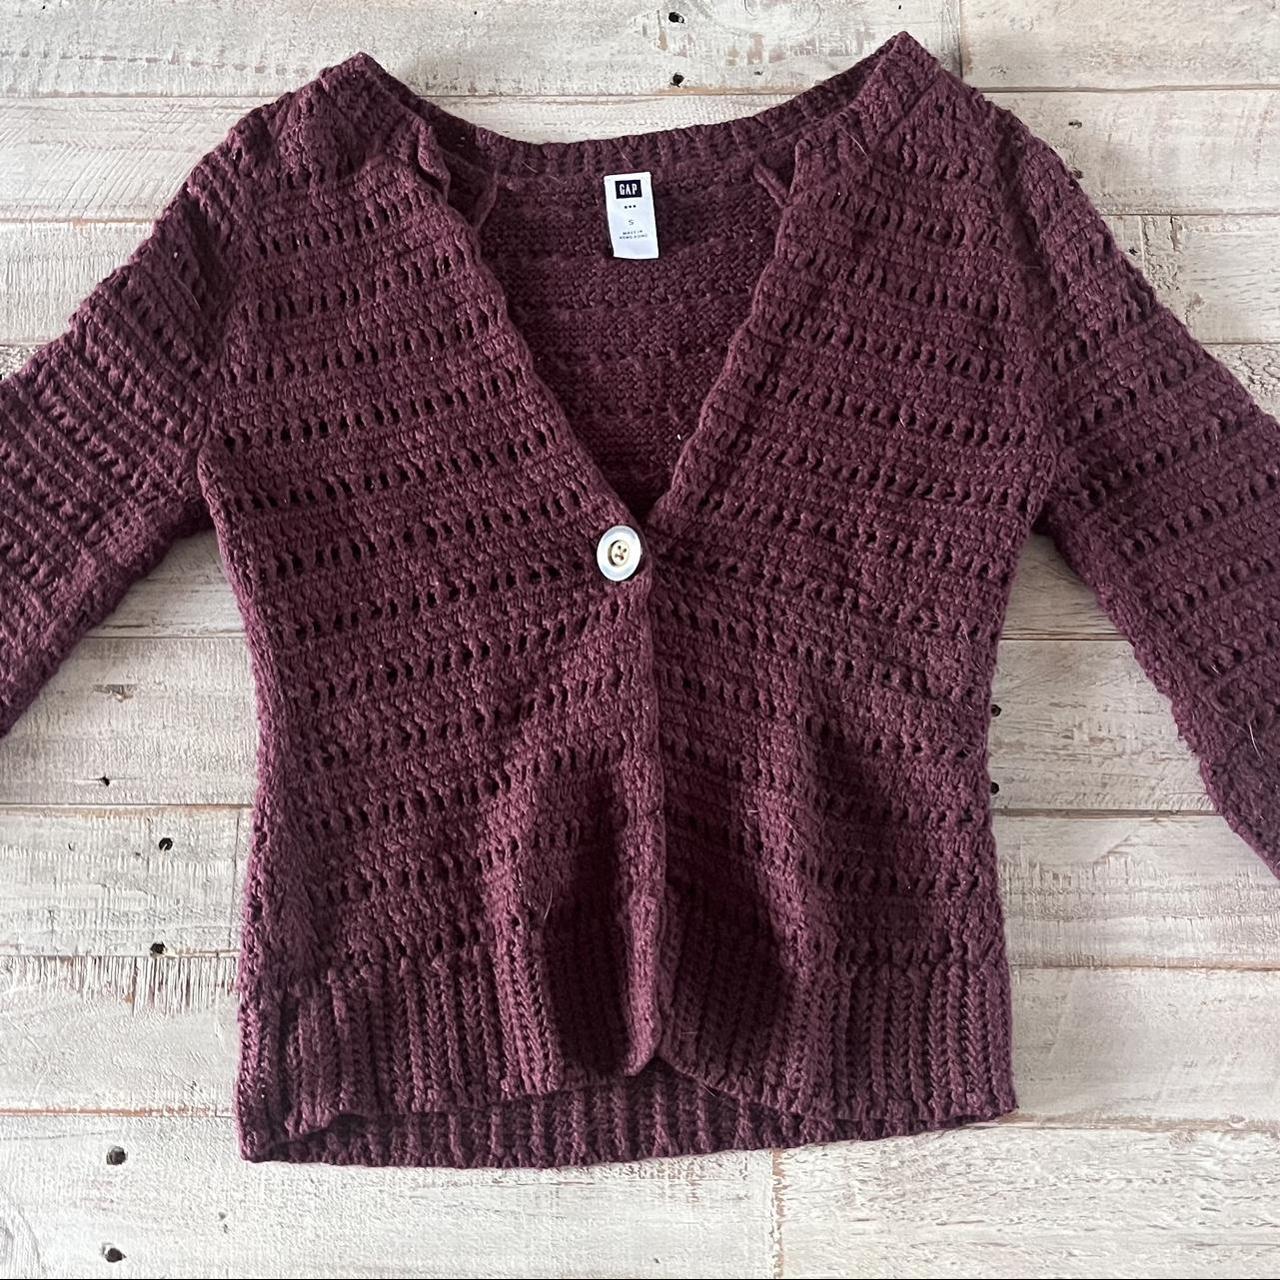 Brown crochet cardigan 🧶 • brown crochet cardigan... - Depop